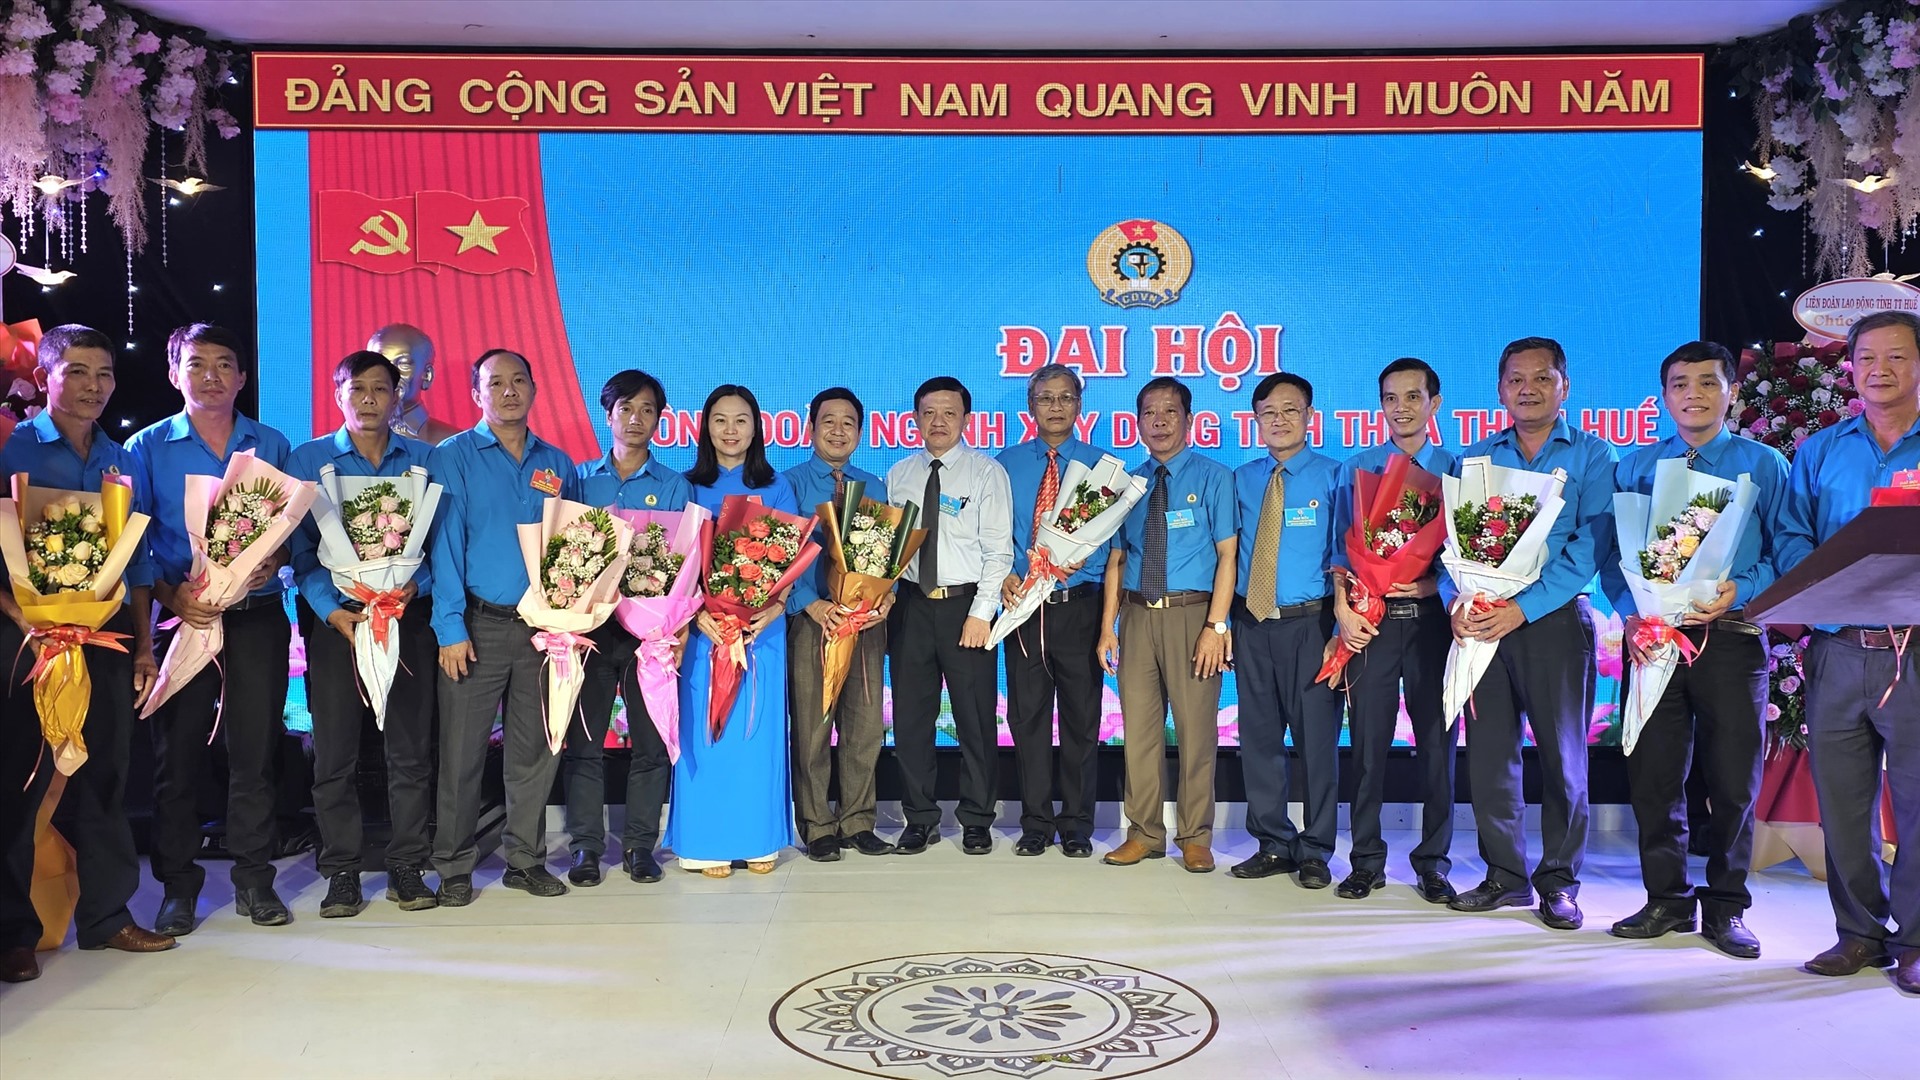 Đại hội ra mắt Ban chấp hành Công đoàn ngành Xây dựng tỉnh Thừa Thiên Huế khóa VIII nhiệm kỳ 2023 - 2028. Ảnh: Nguyễn Luân.